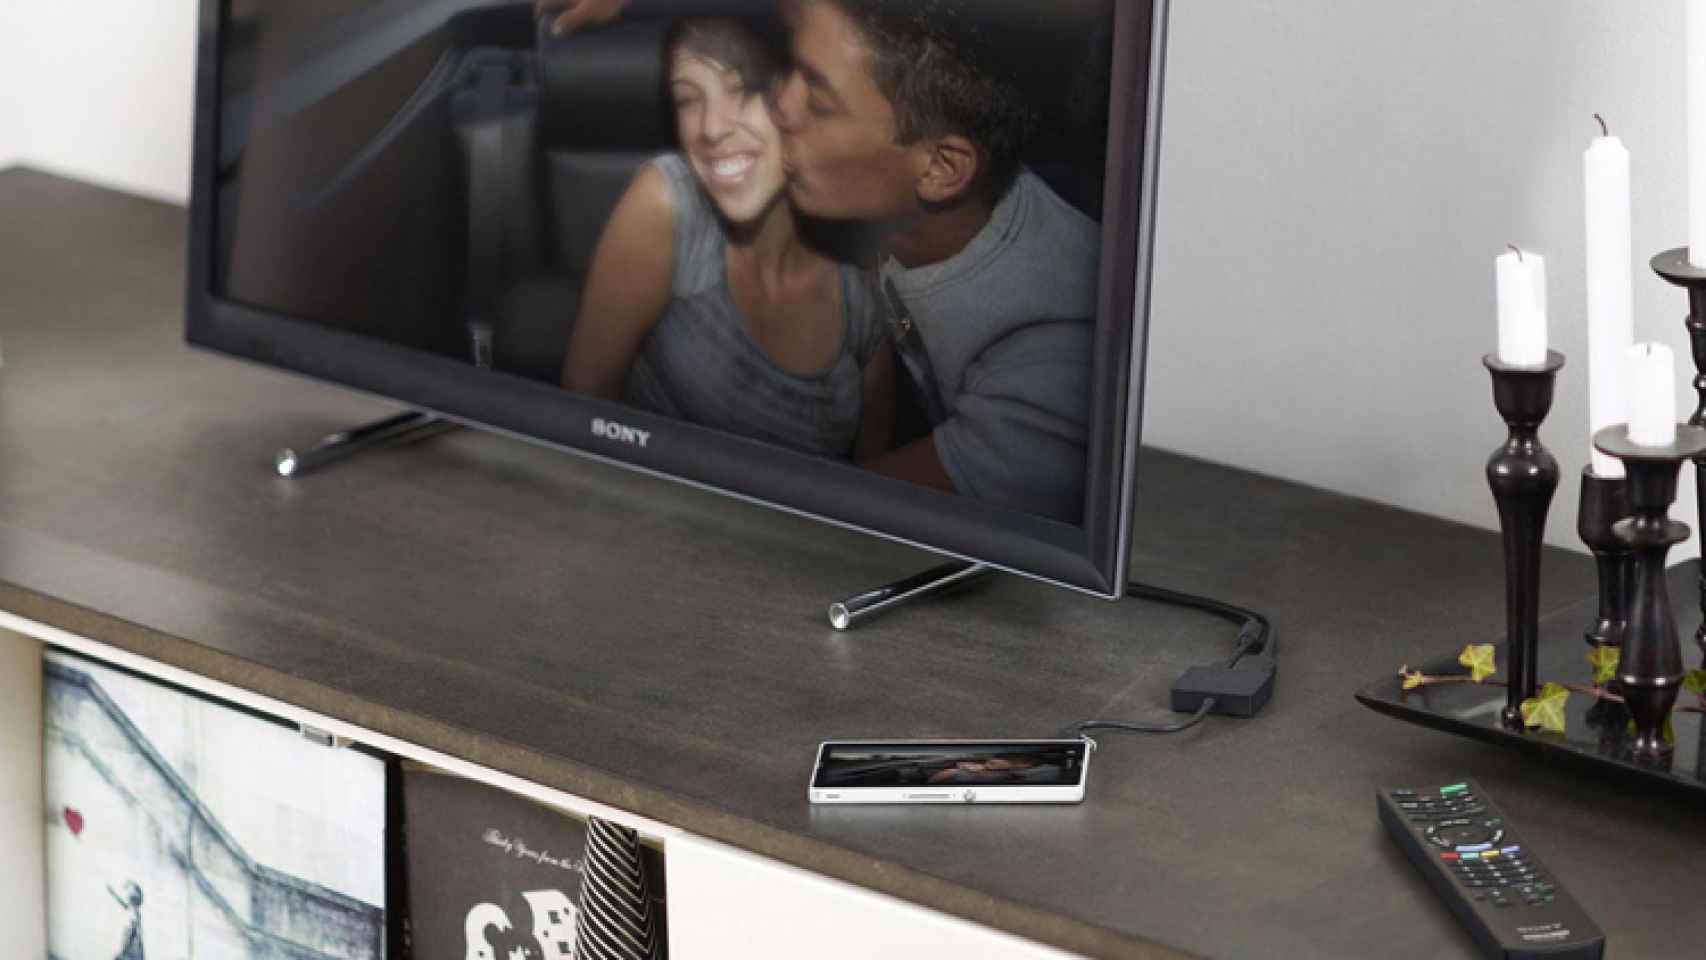 Выведи на телевизор игру. Sony im750. DLNA LG Smart TV. DEXP 24 дюйма телевизор Smart TV. Телевизор через смартфон.